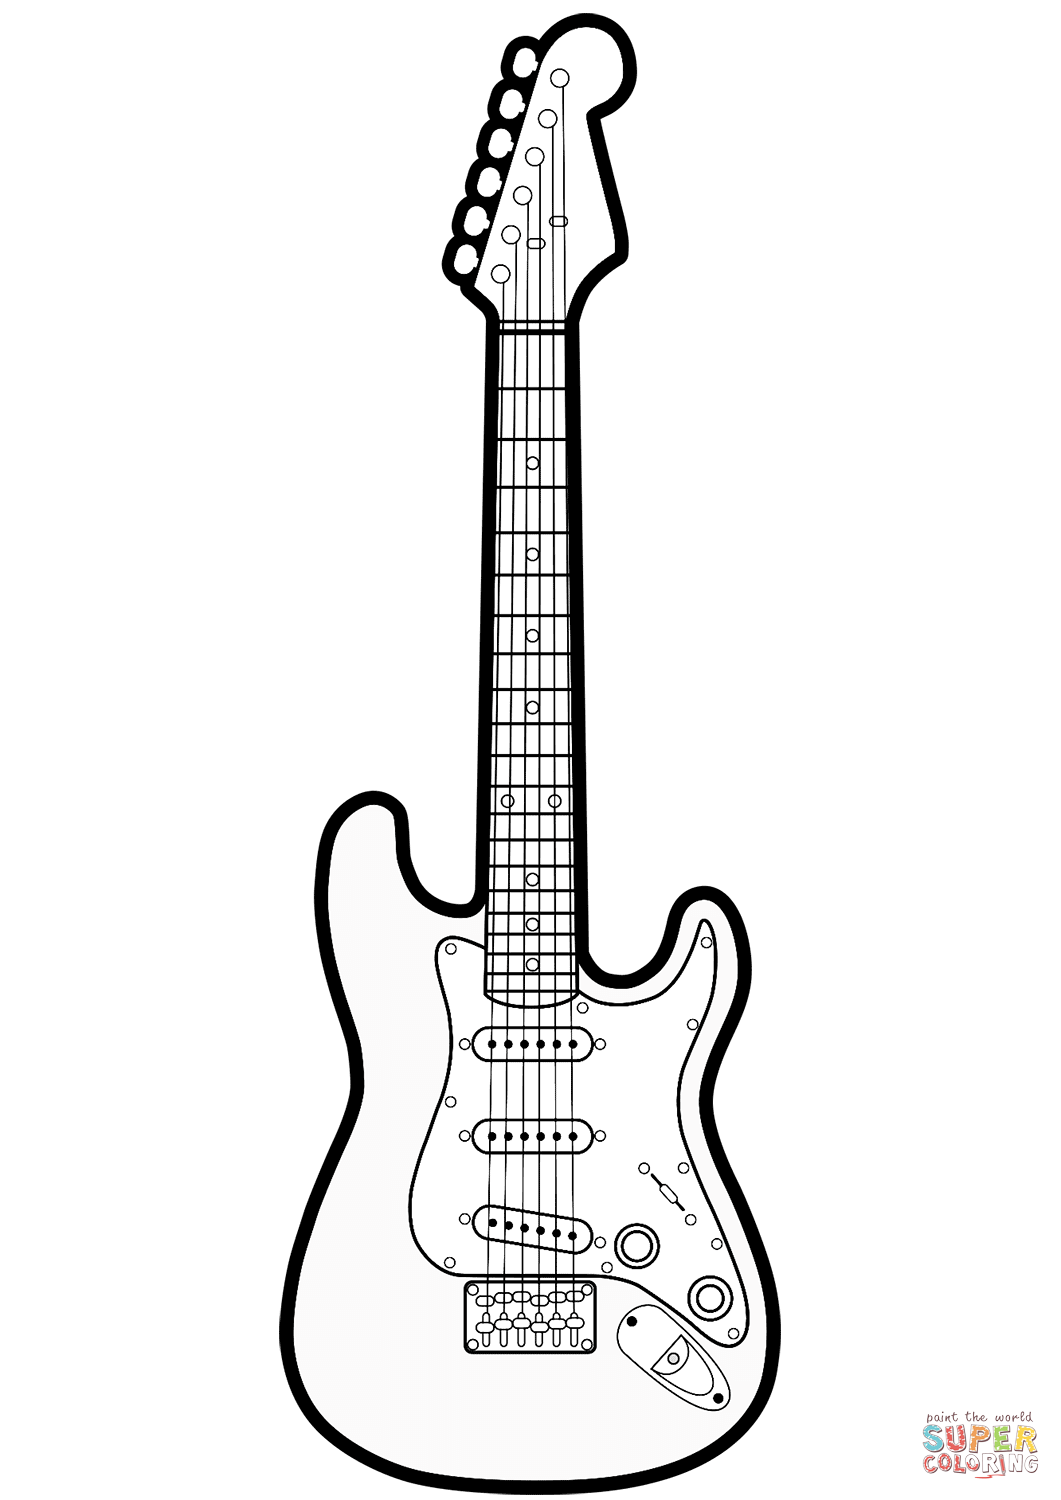 Dibujo de guitarra electrica para colorear dibujos para colorear imprimir gratis